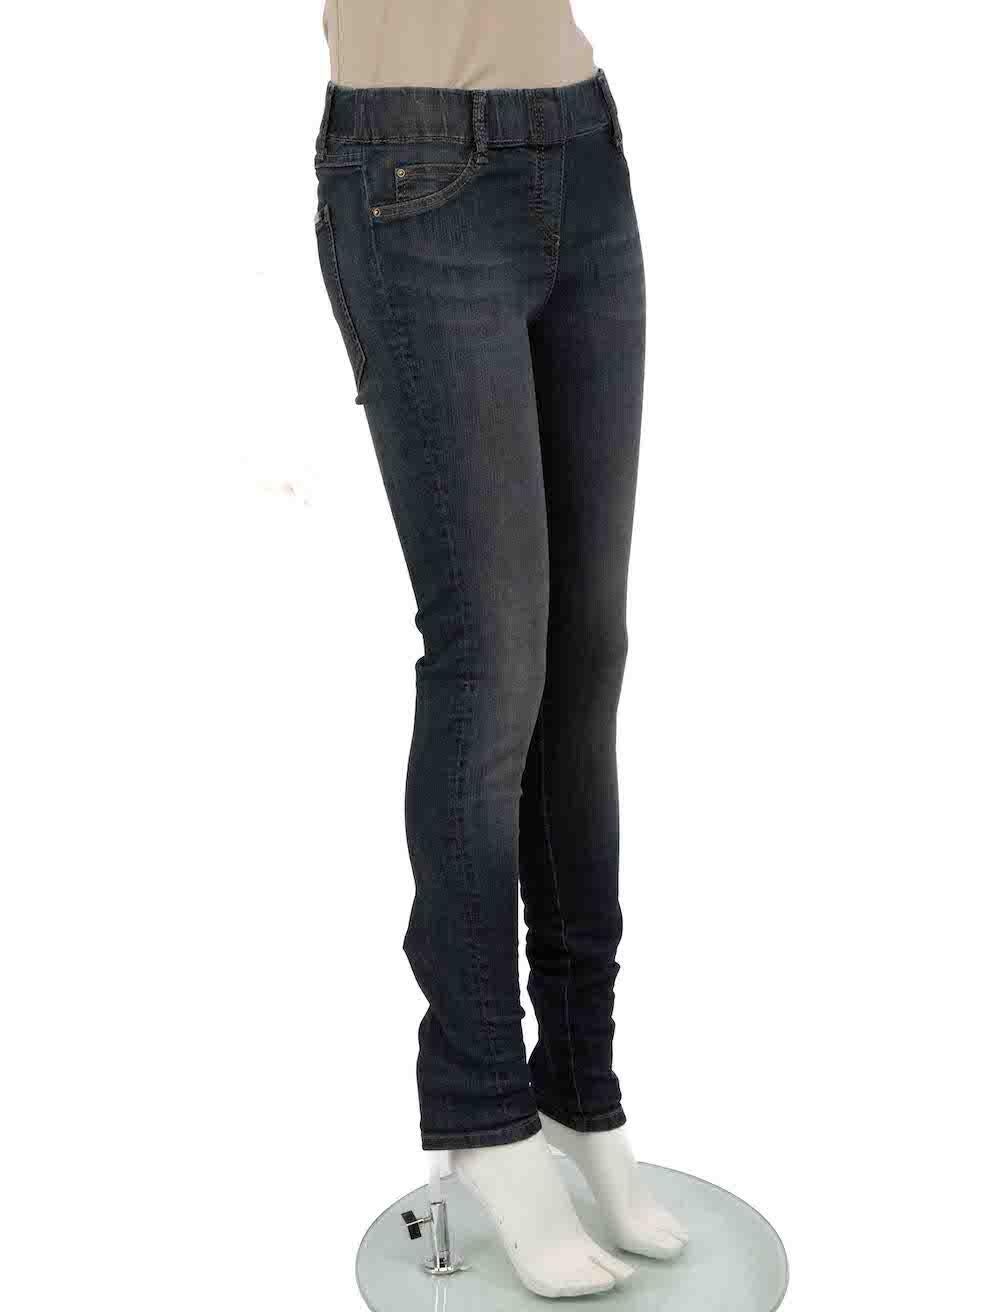 CONDITION ist nie getragen, mit Tags. Keine sichtbaren Abnutzungserscheinungen an der Hose sind bei diesem neuen Brunello Cucinelli Designer-Wiederverkaufsartikel zu erkennen.
 
 
 
 Einzelheiten
 
 
 Blau
 
 Baumwolle-Elastan
 
 Skinny-Jeans
 
